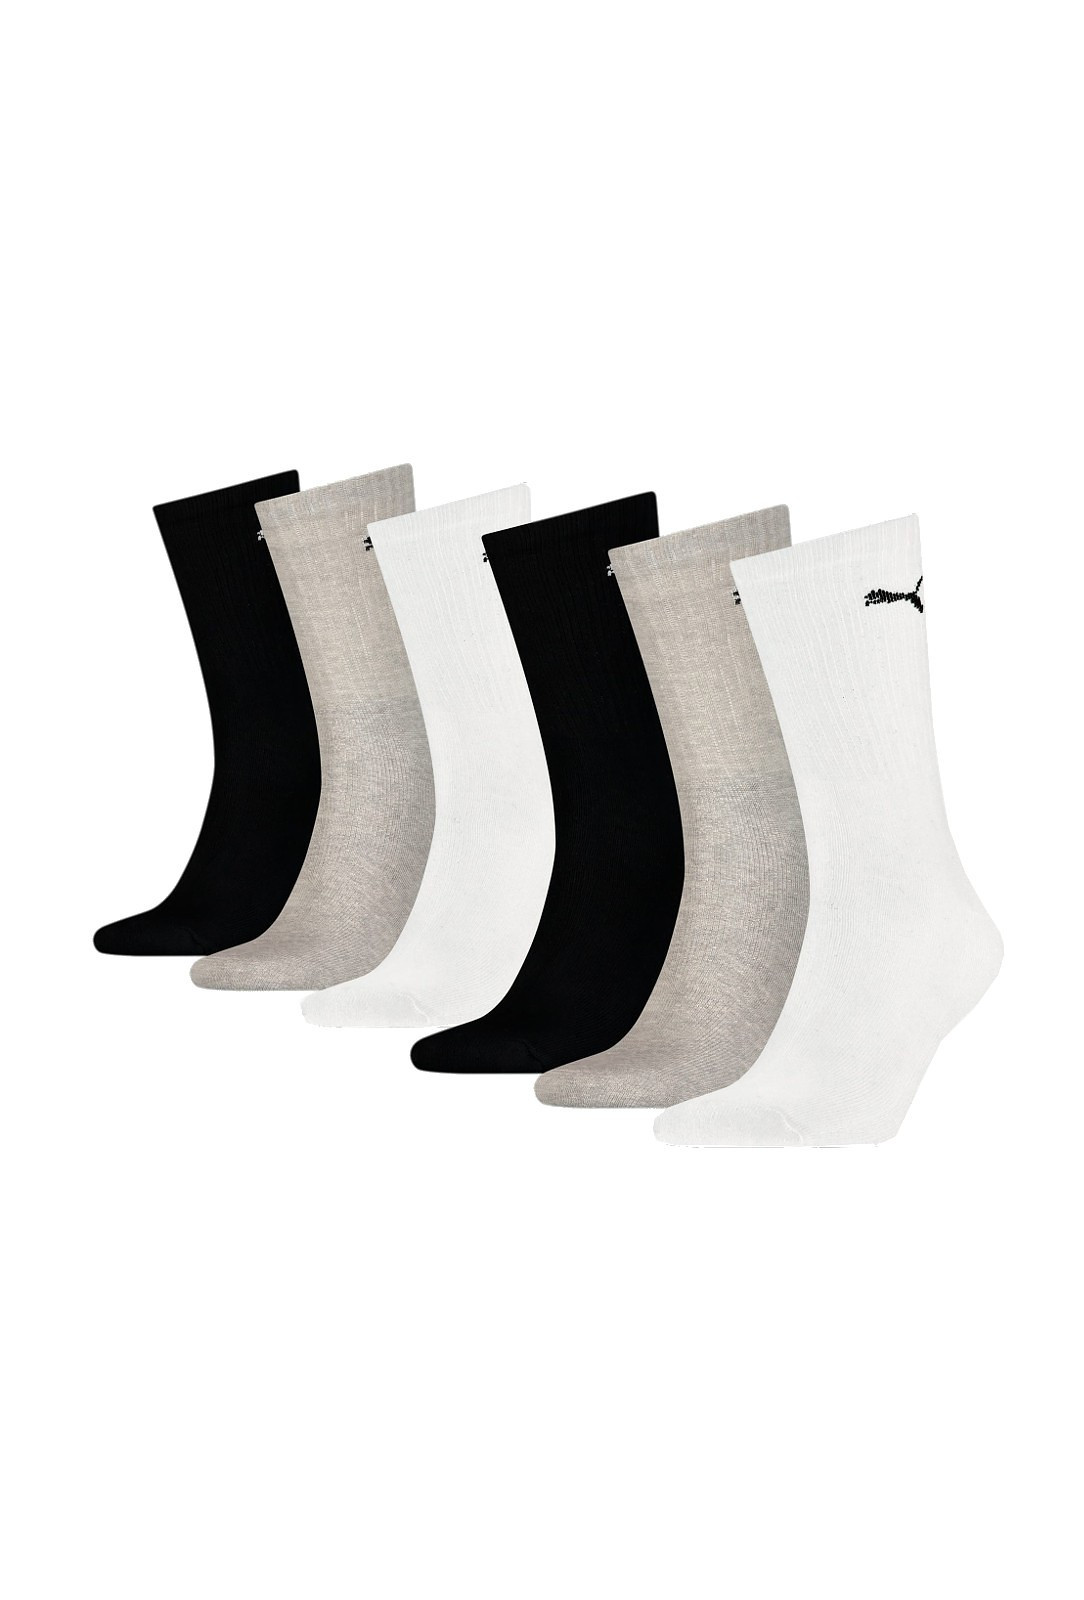 Dámské/pánské ponožky Puma 906656 Crew Soft Cotton A'6 35-46 šedo-bílo-černá 39-42